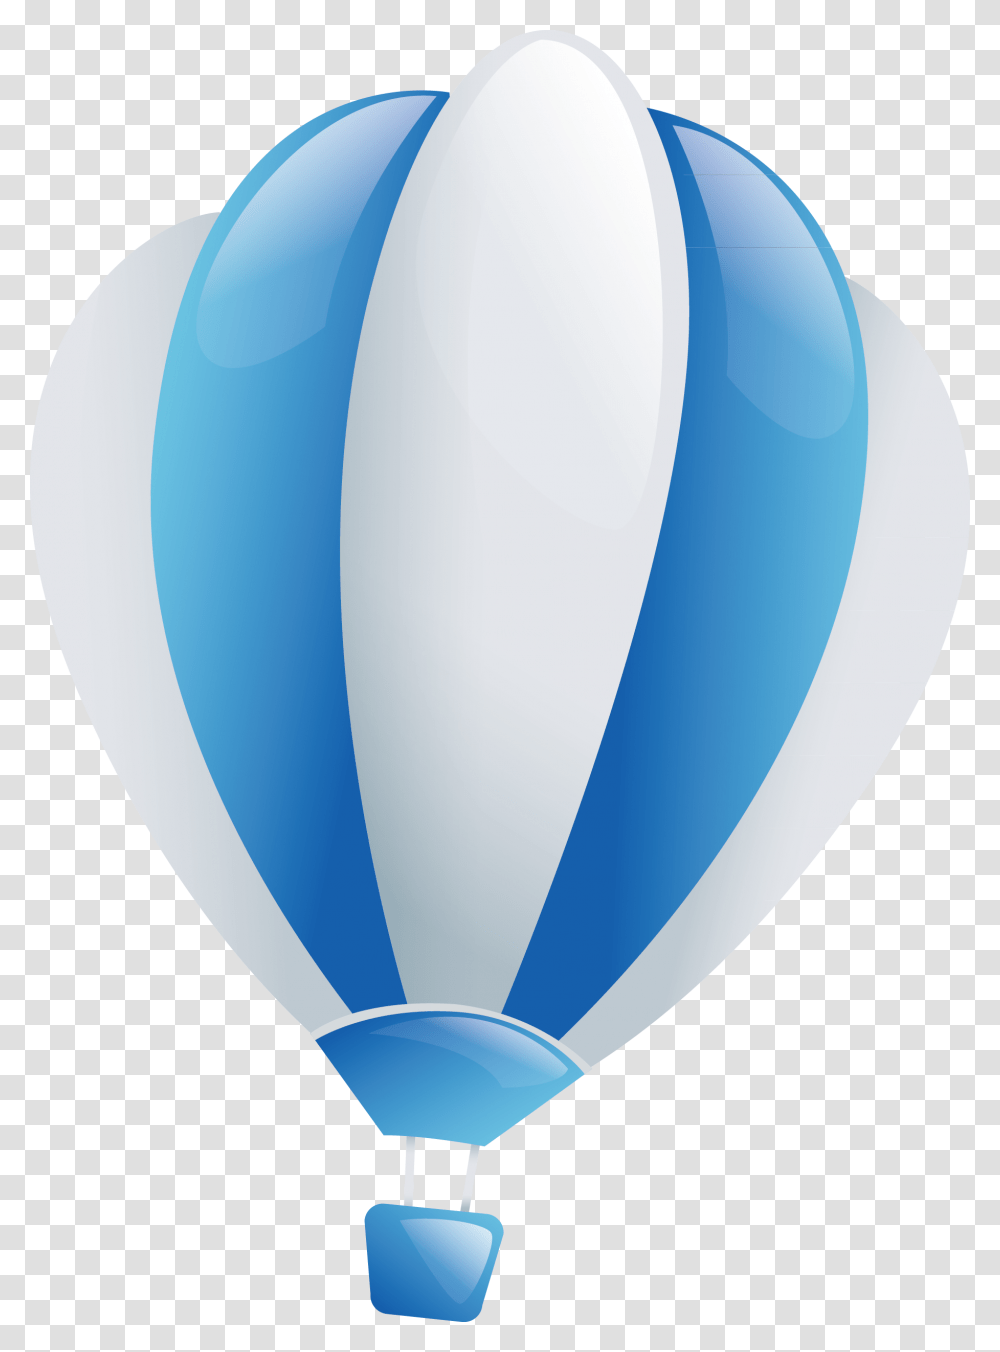 Голубому воздушному шару